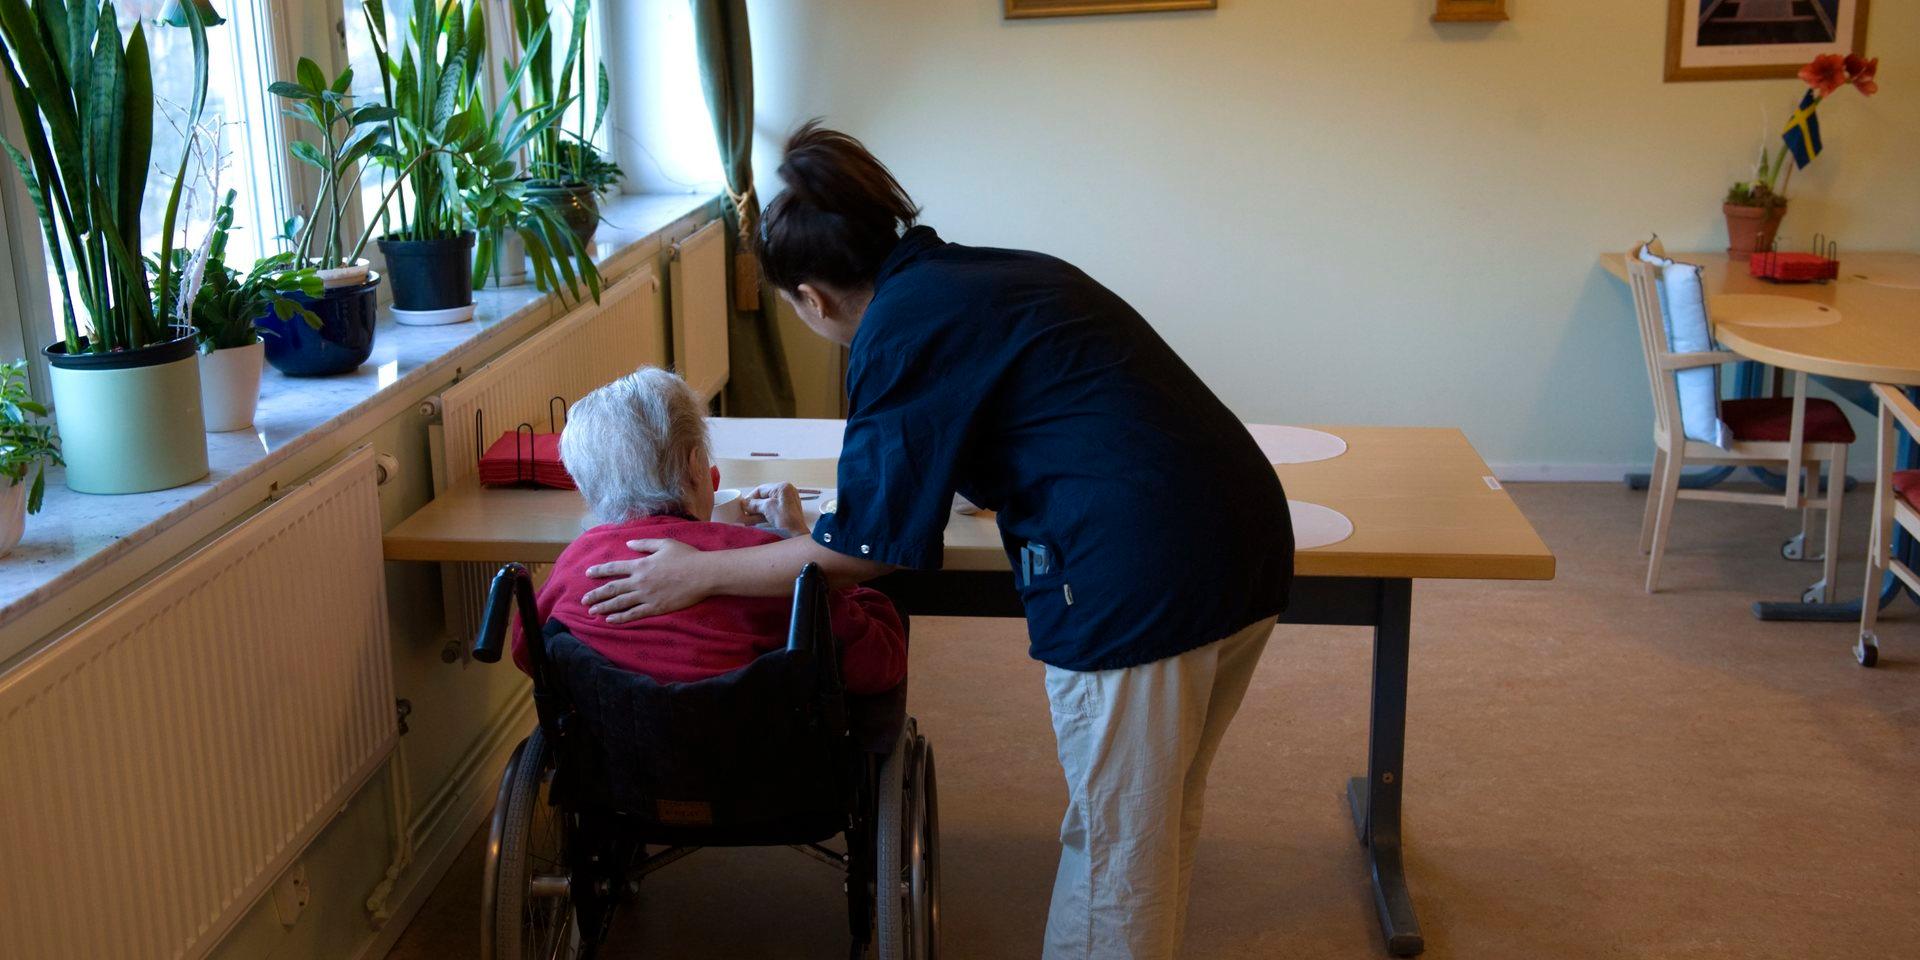 En fråga om kommunikation. Det är en trygghetsfråga för äldre att omsorgspersonal ska behärska svenska.
 